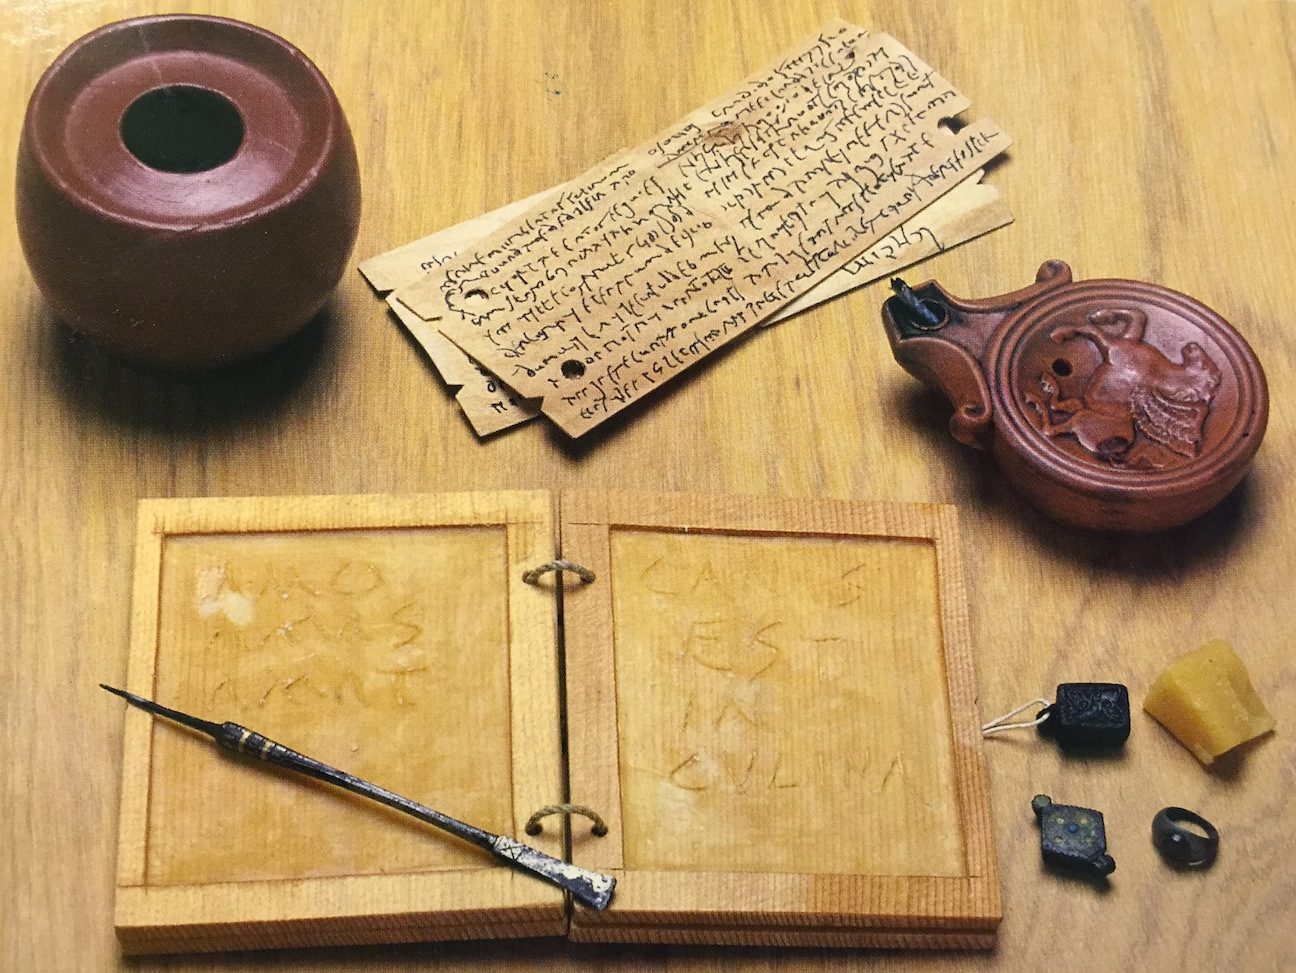 Rimski pribor za pisanje star 1800 godina otkriven u Turskoj